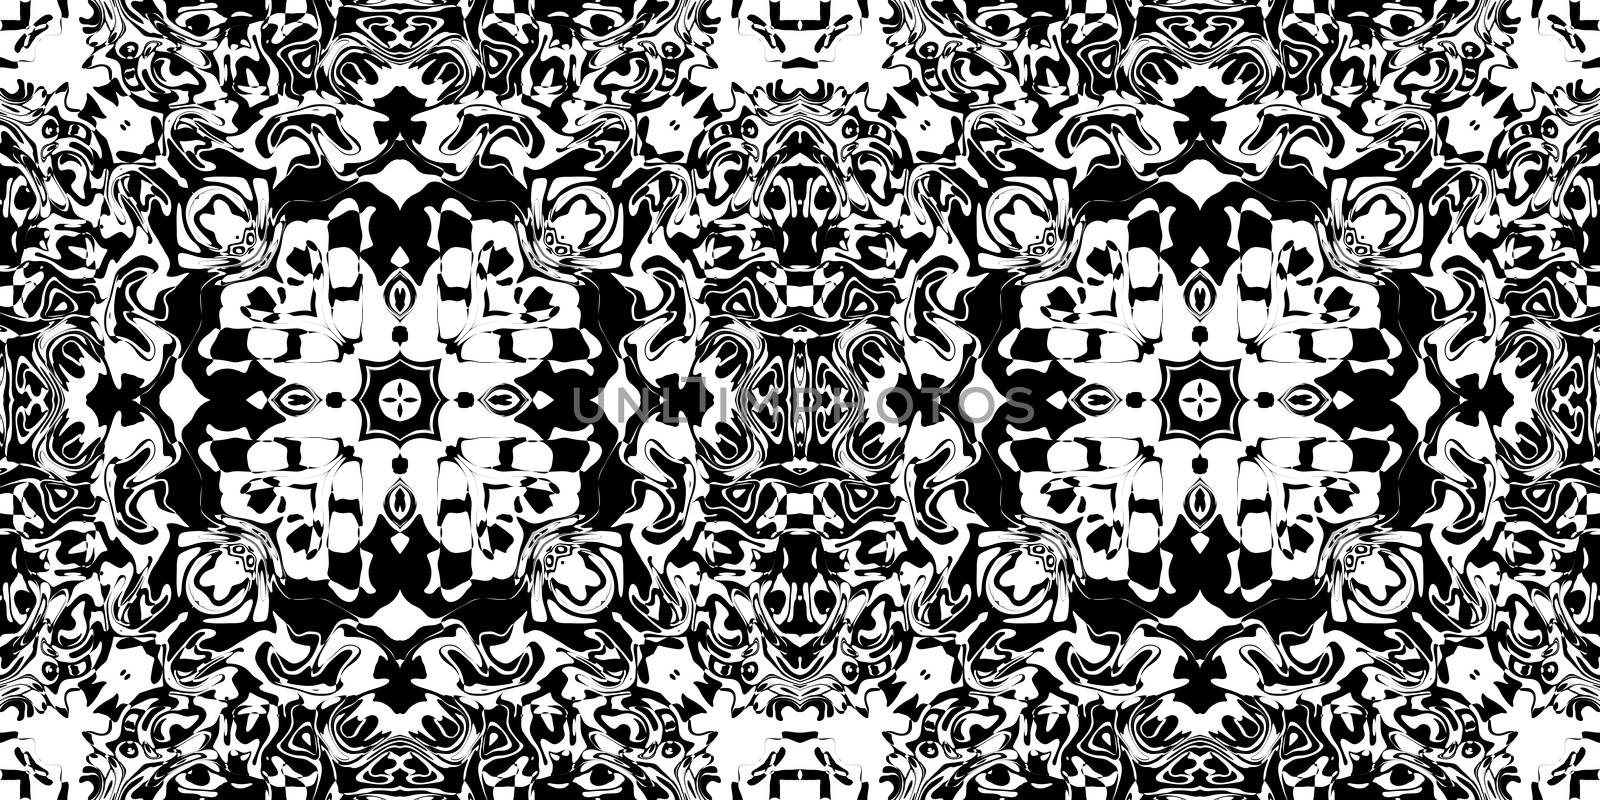 Bizarre Rorschach Test Ink Blot Texture. Seamless Monochrome Darkness Pattern Background.